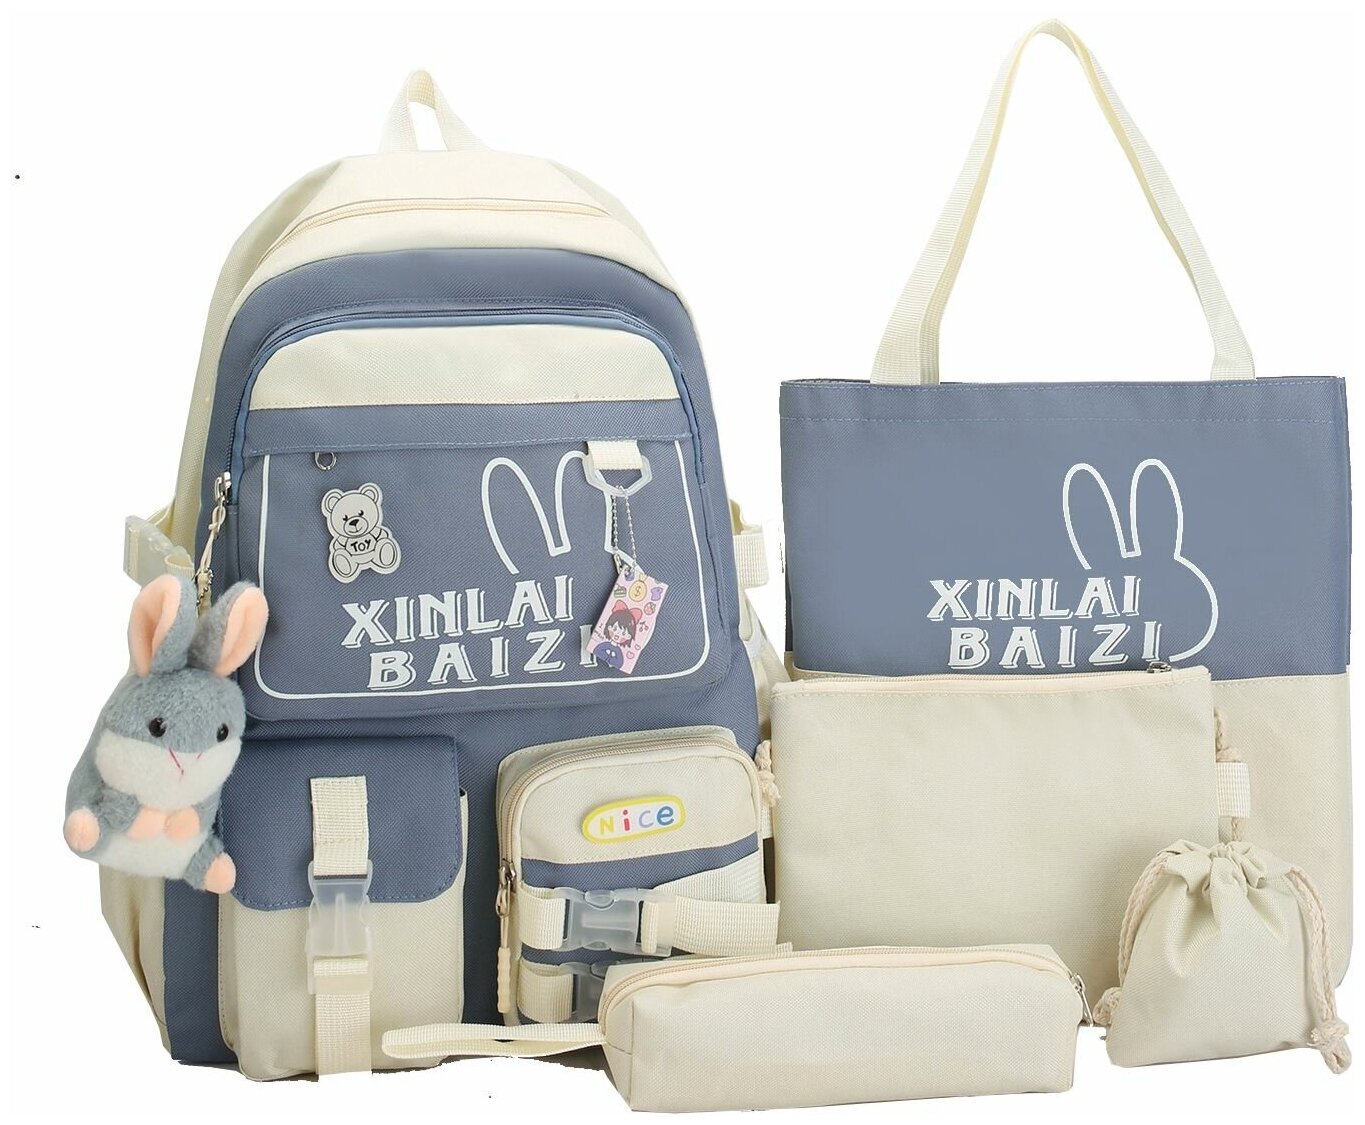 Рюкзак для девочки с комплектом 5 в 1 /Детский пенал, сумки, рюкзак кошелек 5 в 1 для подростков девочек и для прогулки